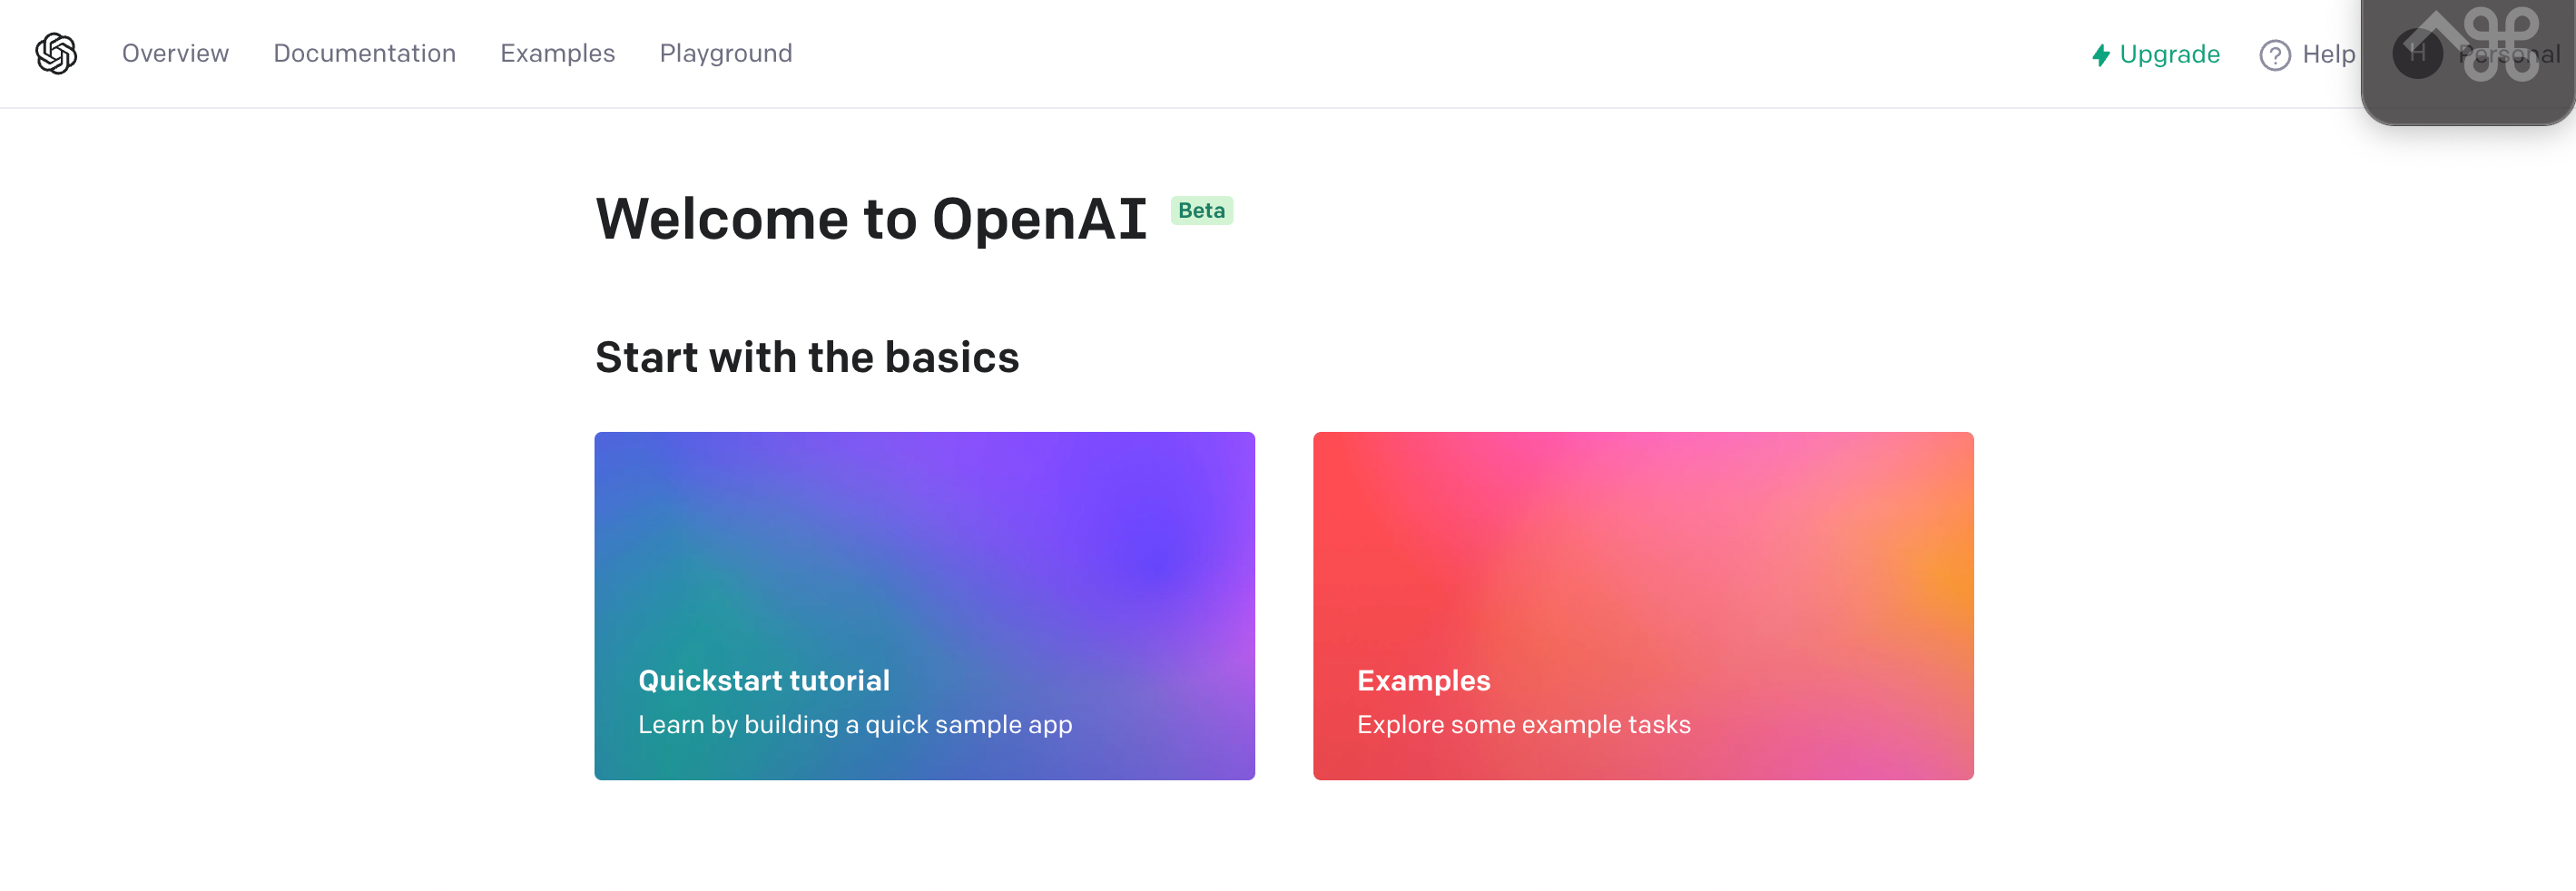 最强人工智能 OpenAI 极简教程